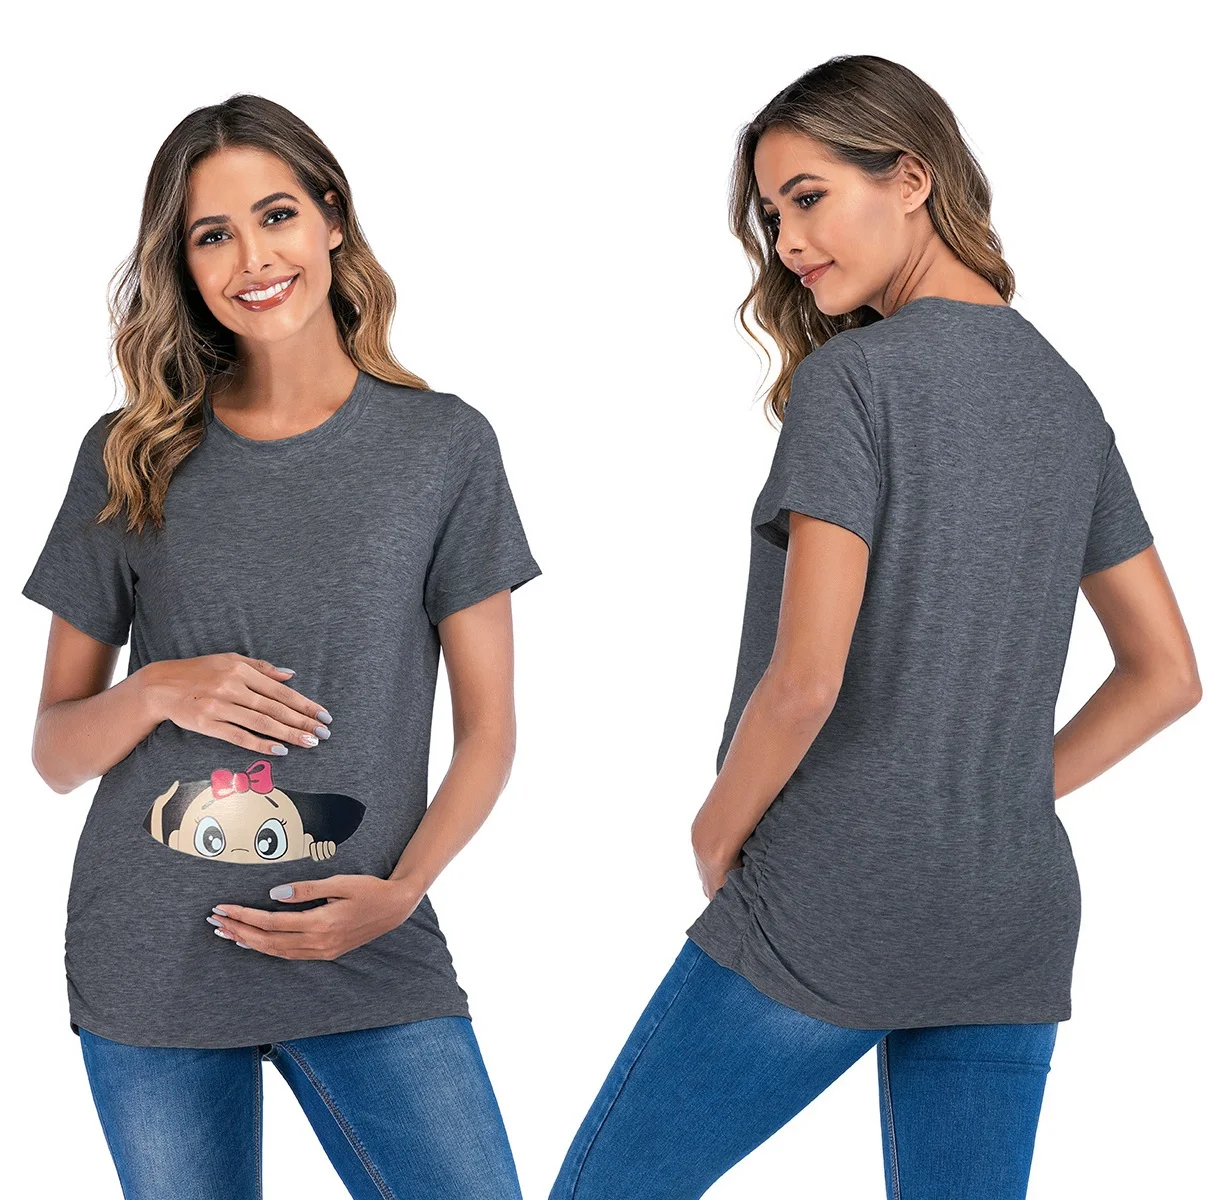 

Женские футболки для беременных топы с принтом для малышей Футболка для беременных Топ Туника женская повседневная одежда для мамы